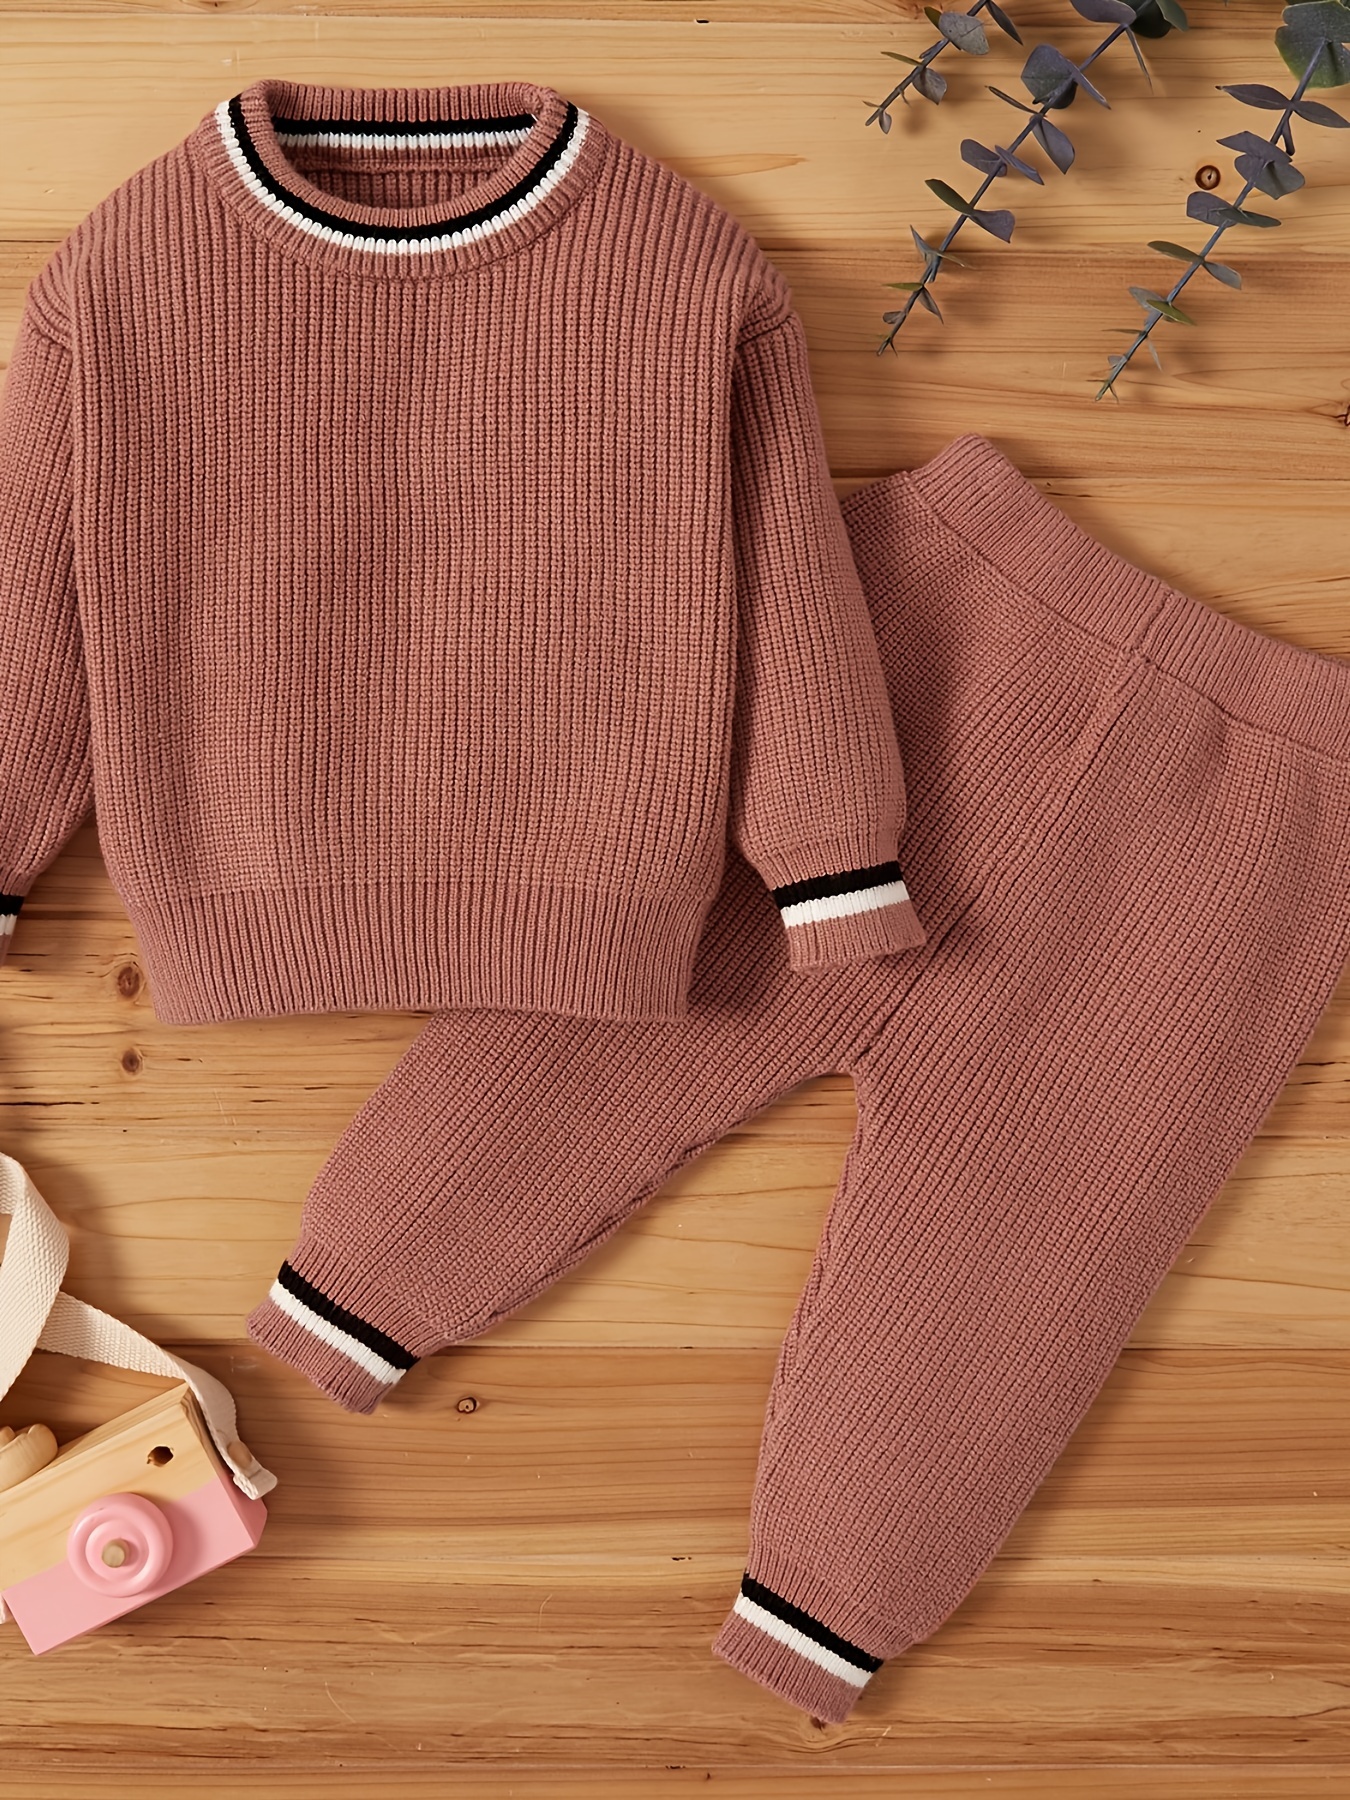 Ensemble pullover et jupe en laine tricot knitwear tendance hiver